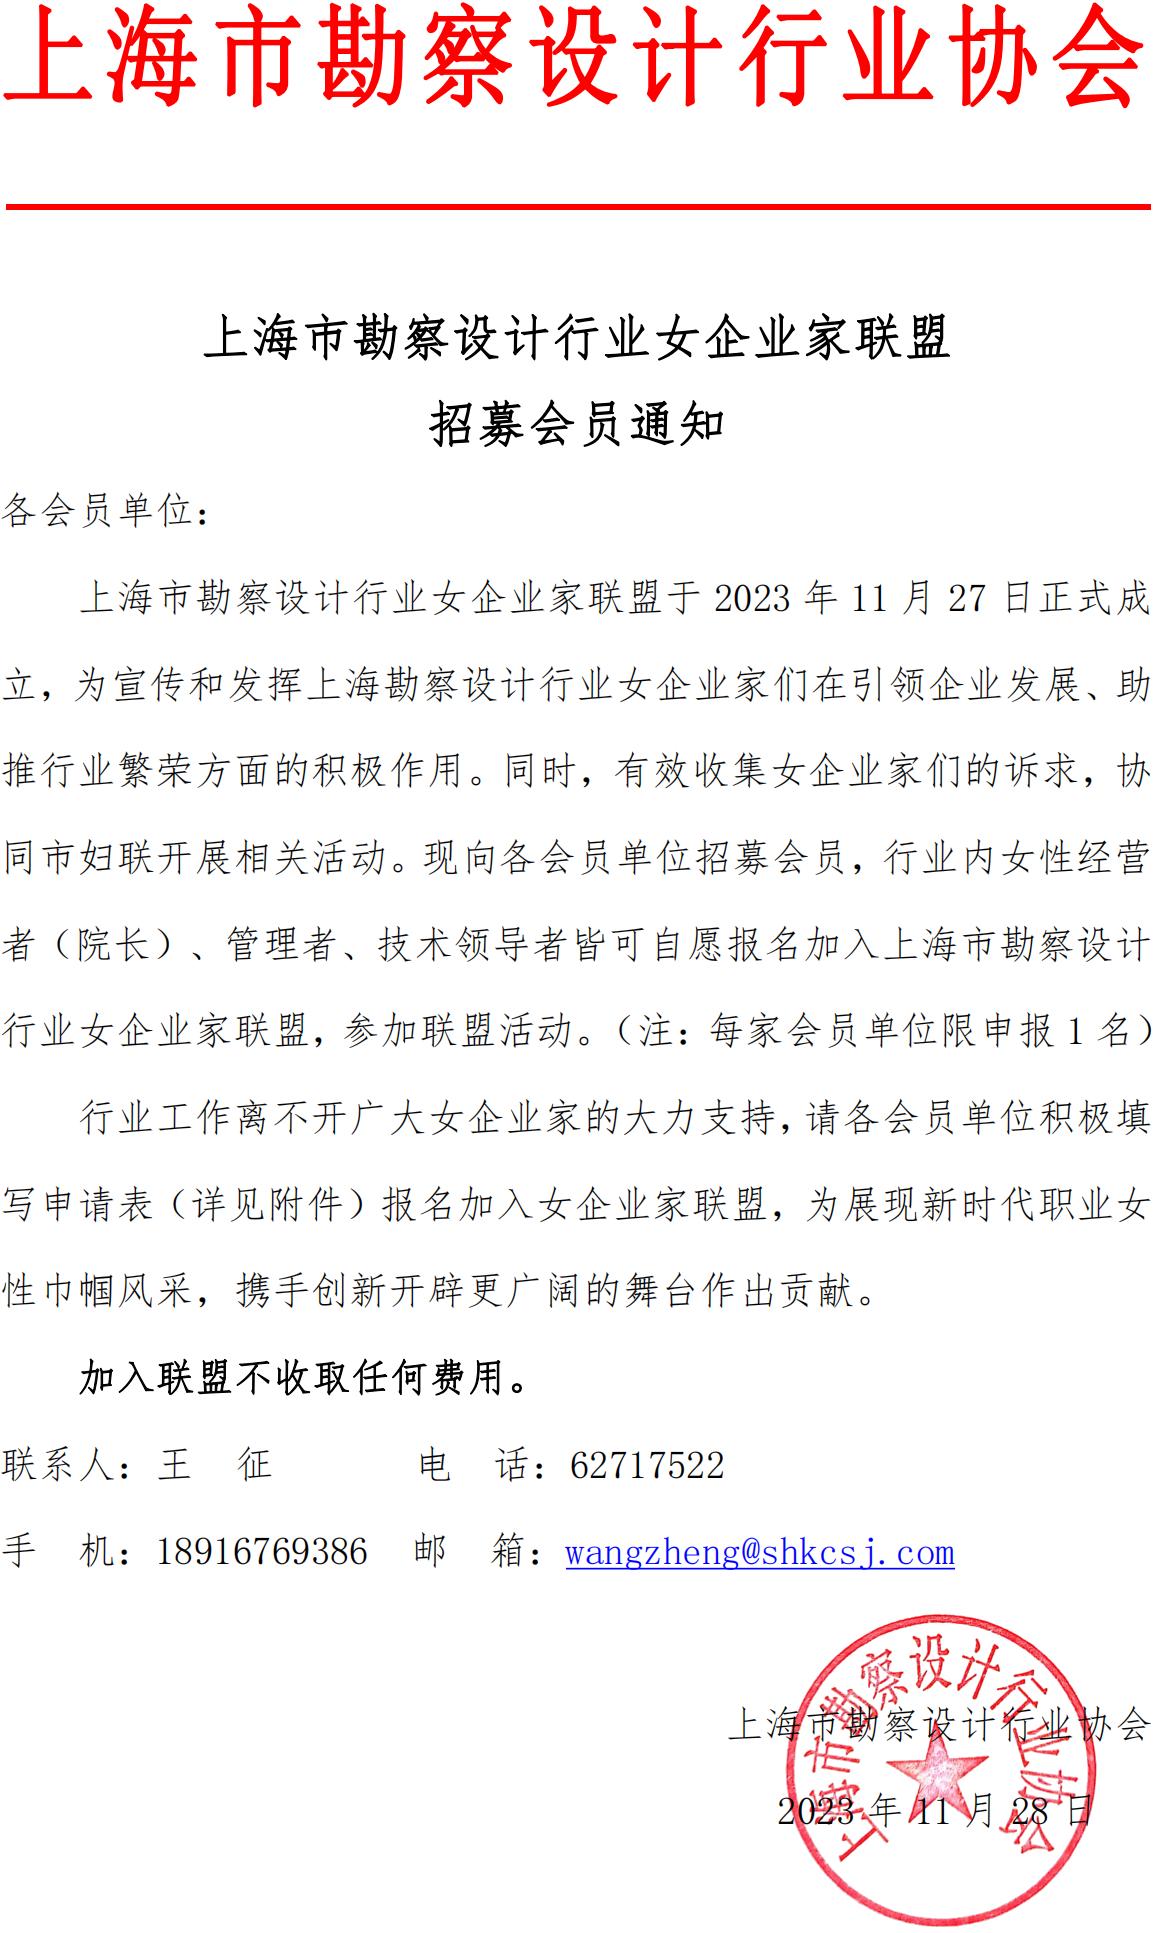 上海市勘察设计行业女企业家联盟招募会员通知(2)_00.jpg